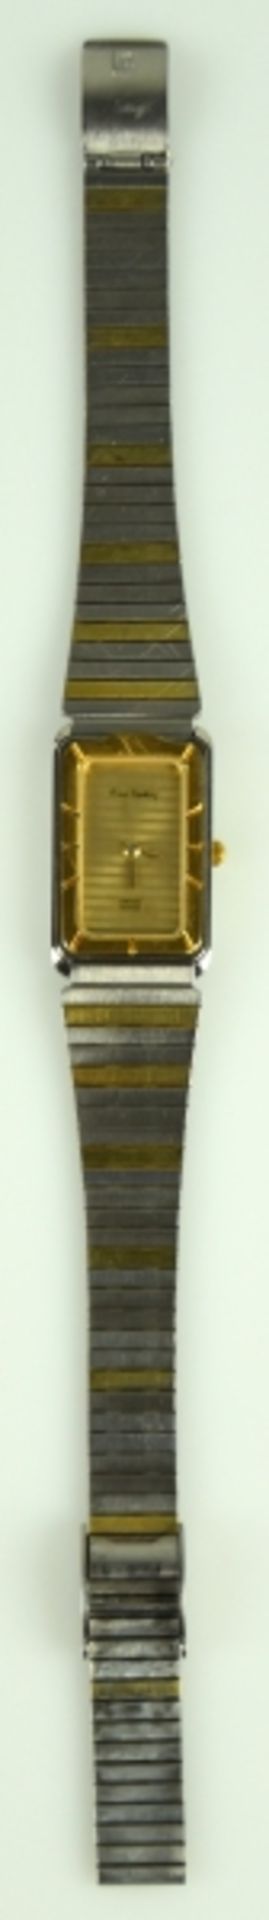 DAMENARMBANDUHR Pierre Cardin, Chromachron, Quarz, Schweiz, bicolor, rechteckiges Stahlgehäuse mit - Image 2 of 2